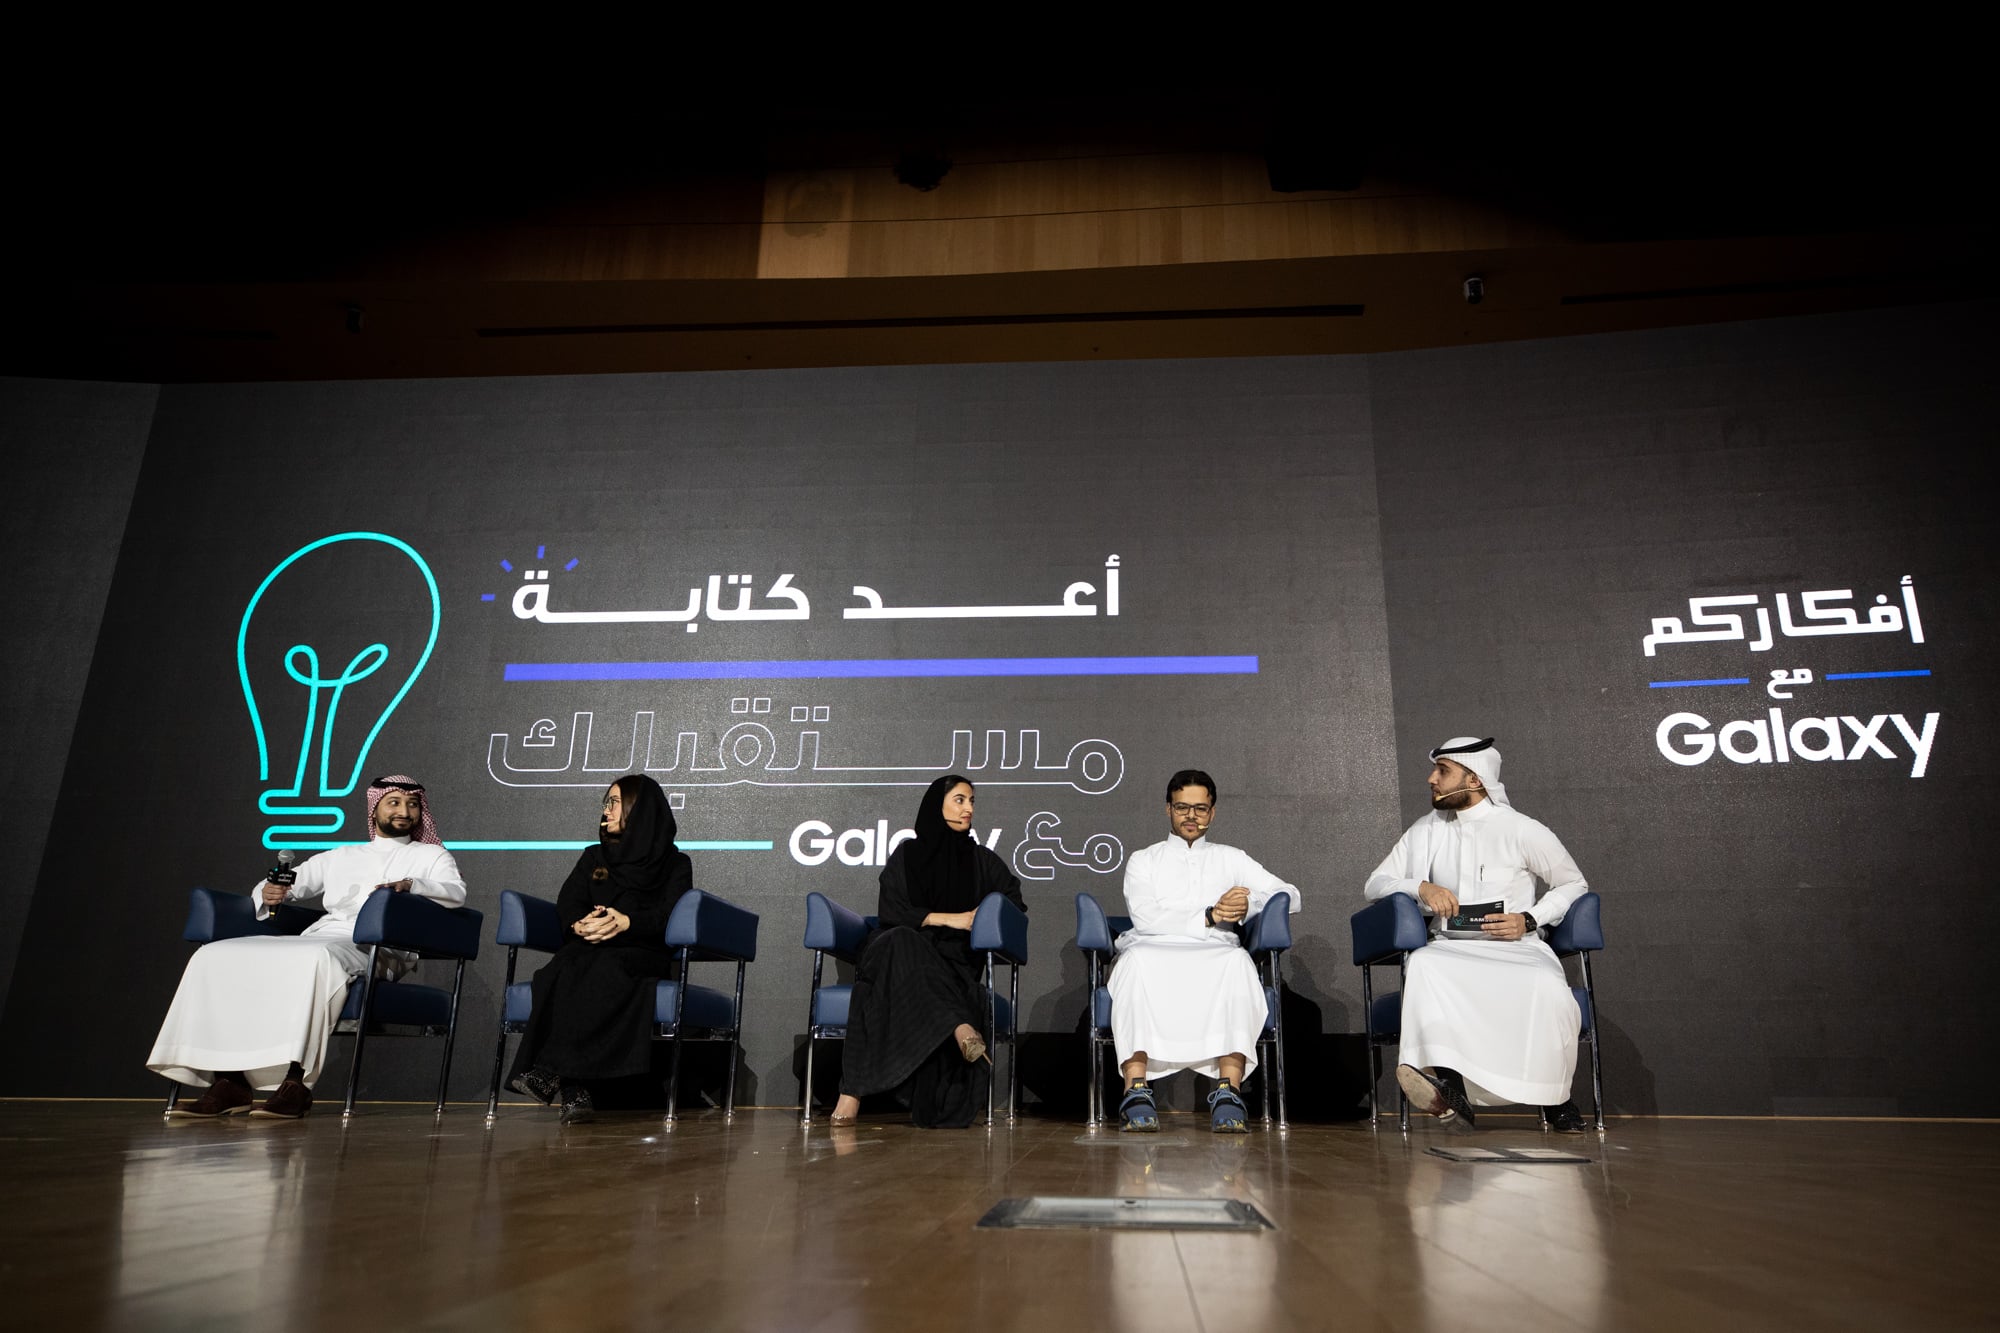 سامسونج تقيم الفعالية الثانية من مبادرة أفكاركم مع Galaxy   البوابة العربية للأخبار التقنية